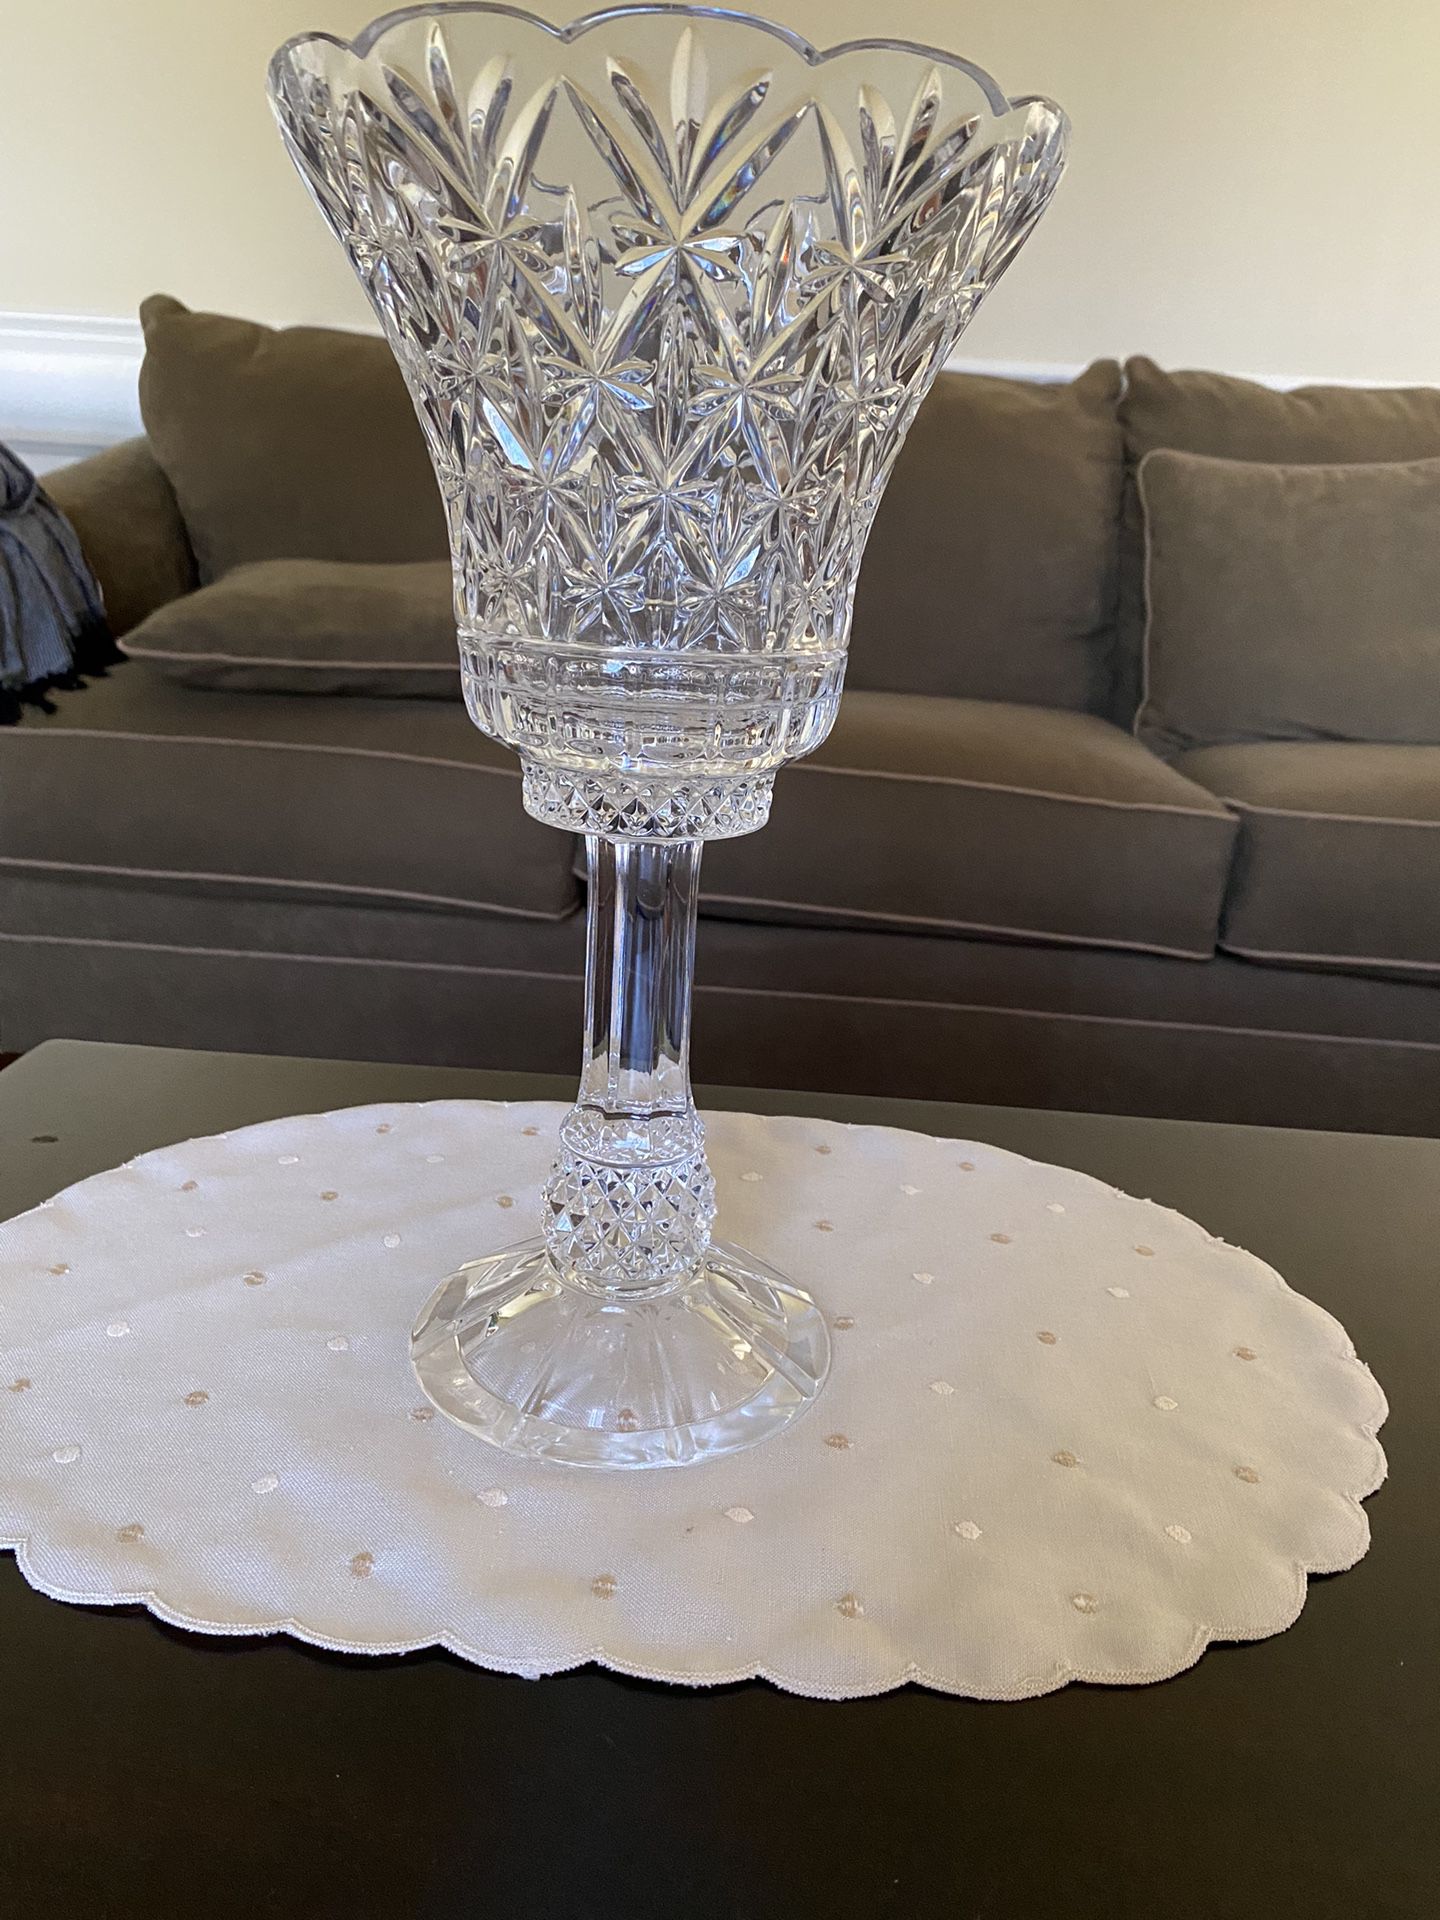 14” Crystal Candle holder vase